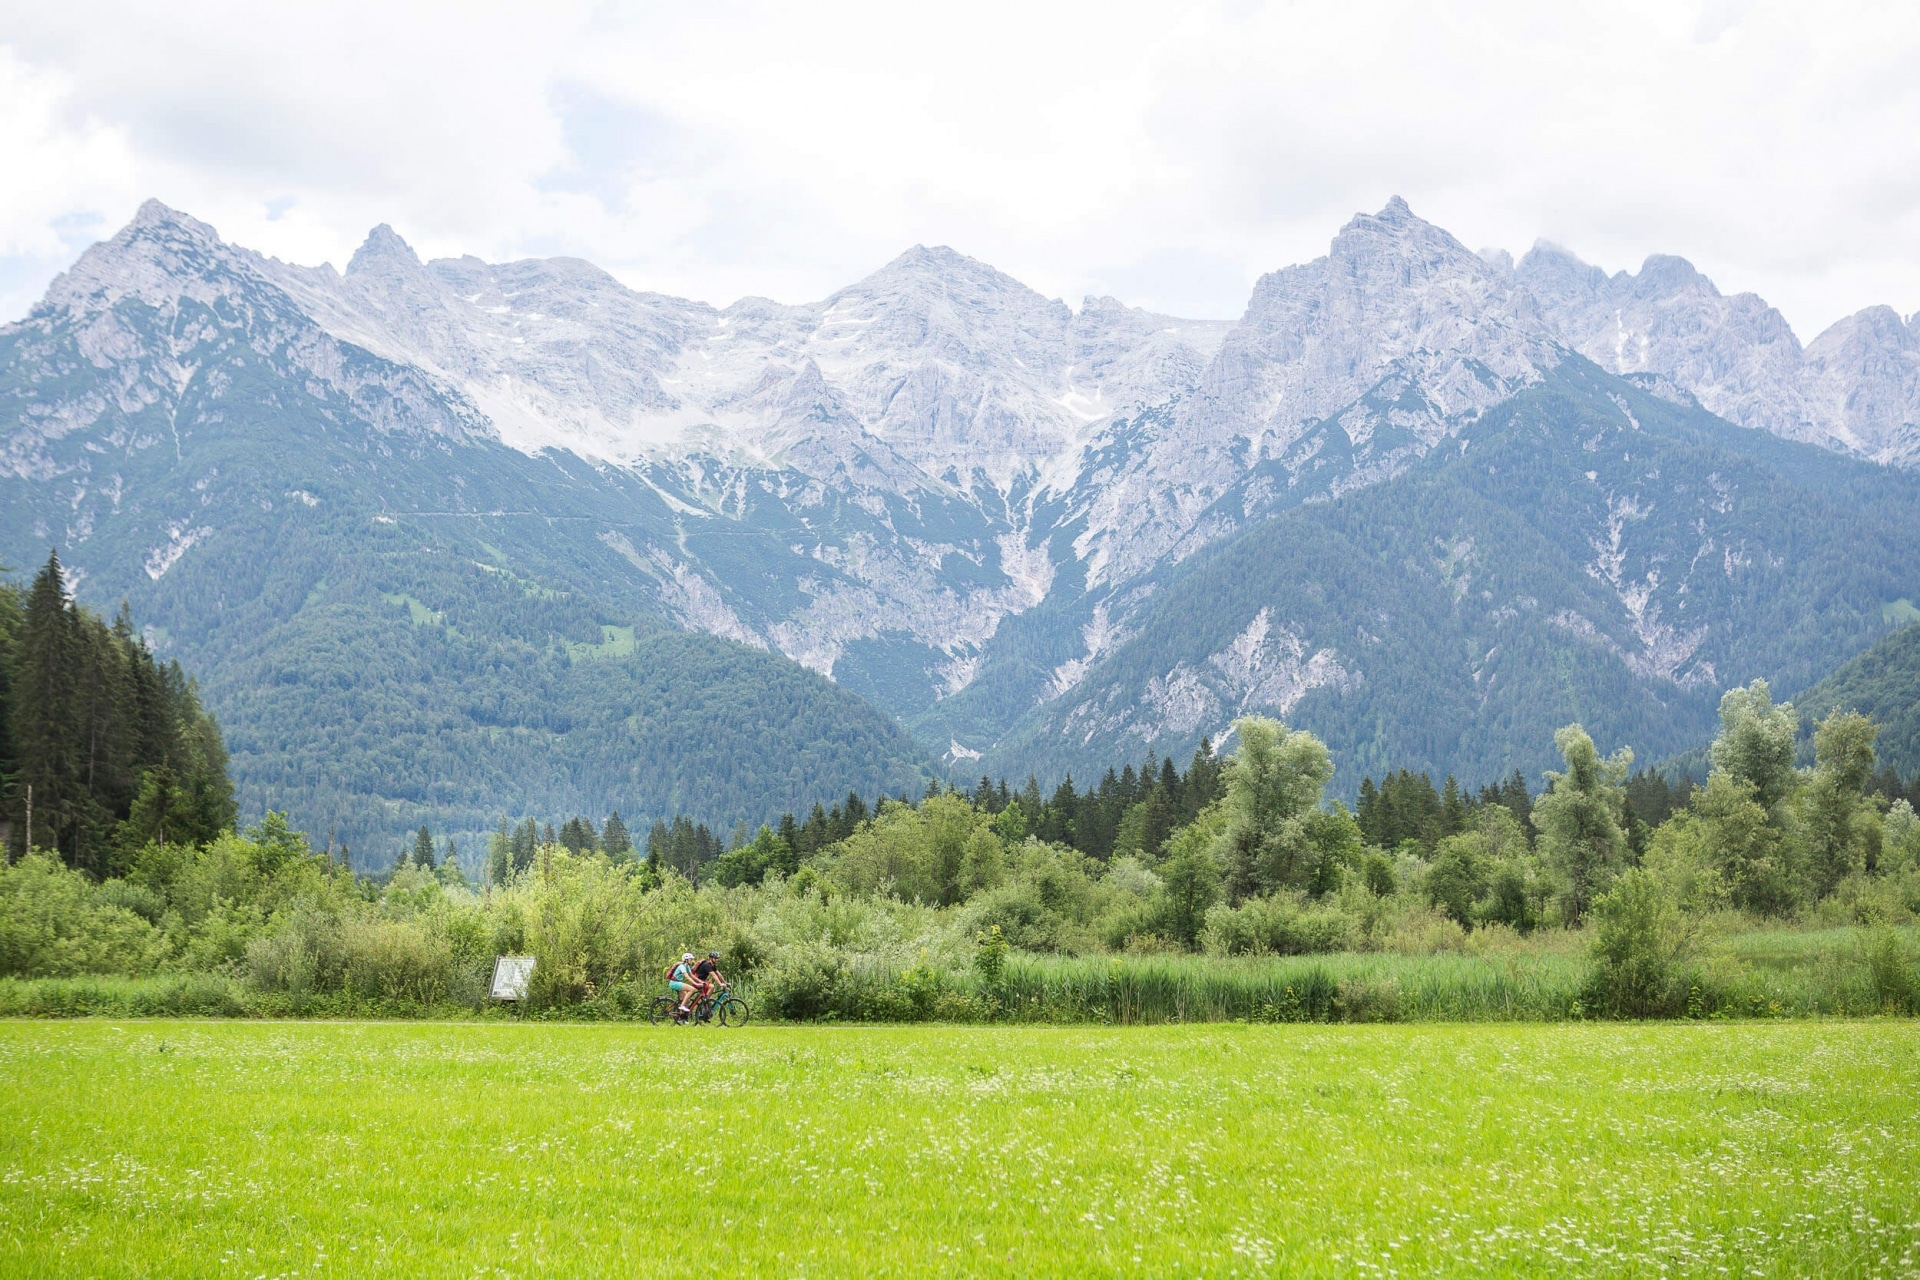 Radtour durch die Kitzbüheler Alpen in Tirol © Velontour